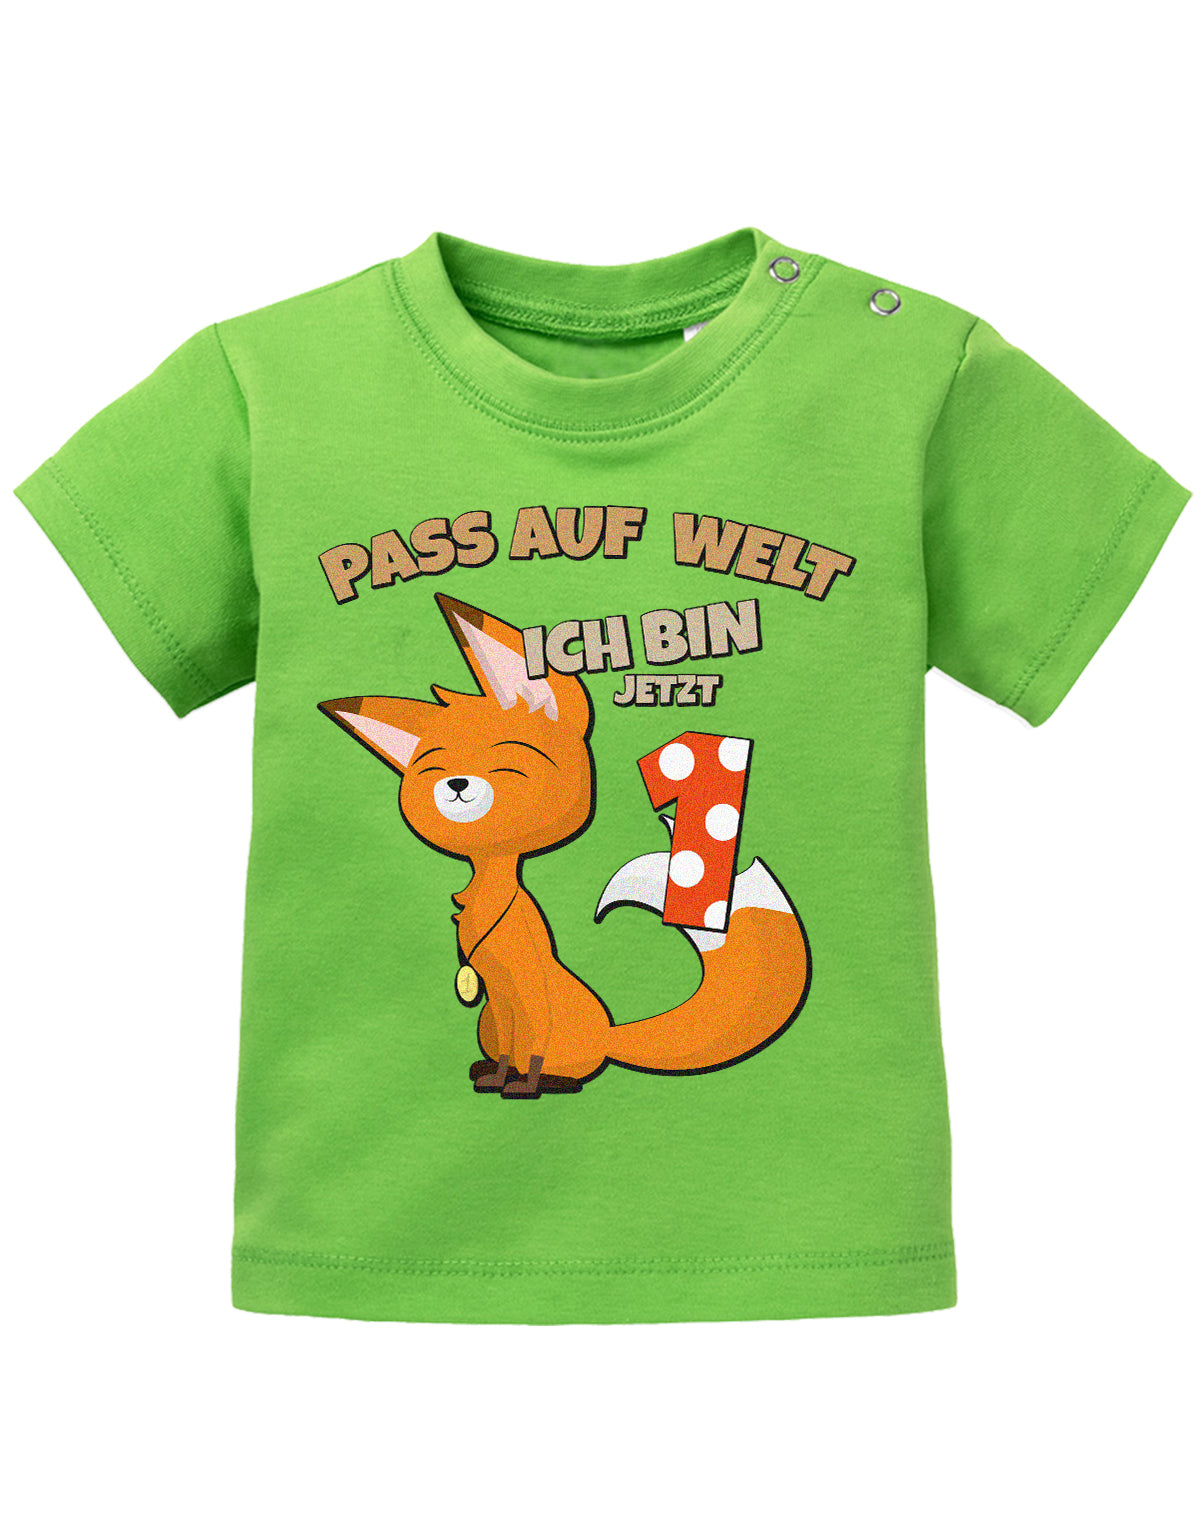 Pass auf welt ich bin jetzt 1 mit fuchs motiv-Geburtstag T-Shirt - 1 Jahr mit Fuchs grün